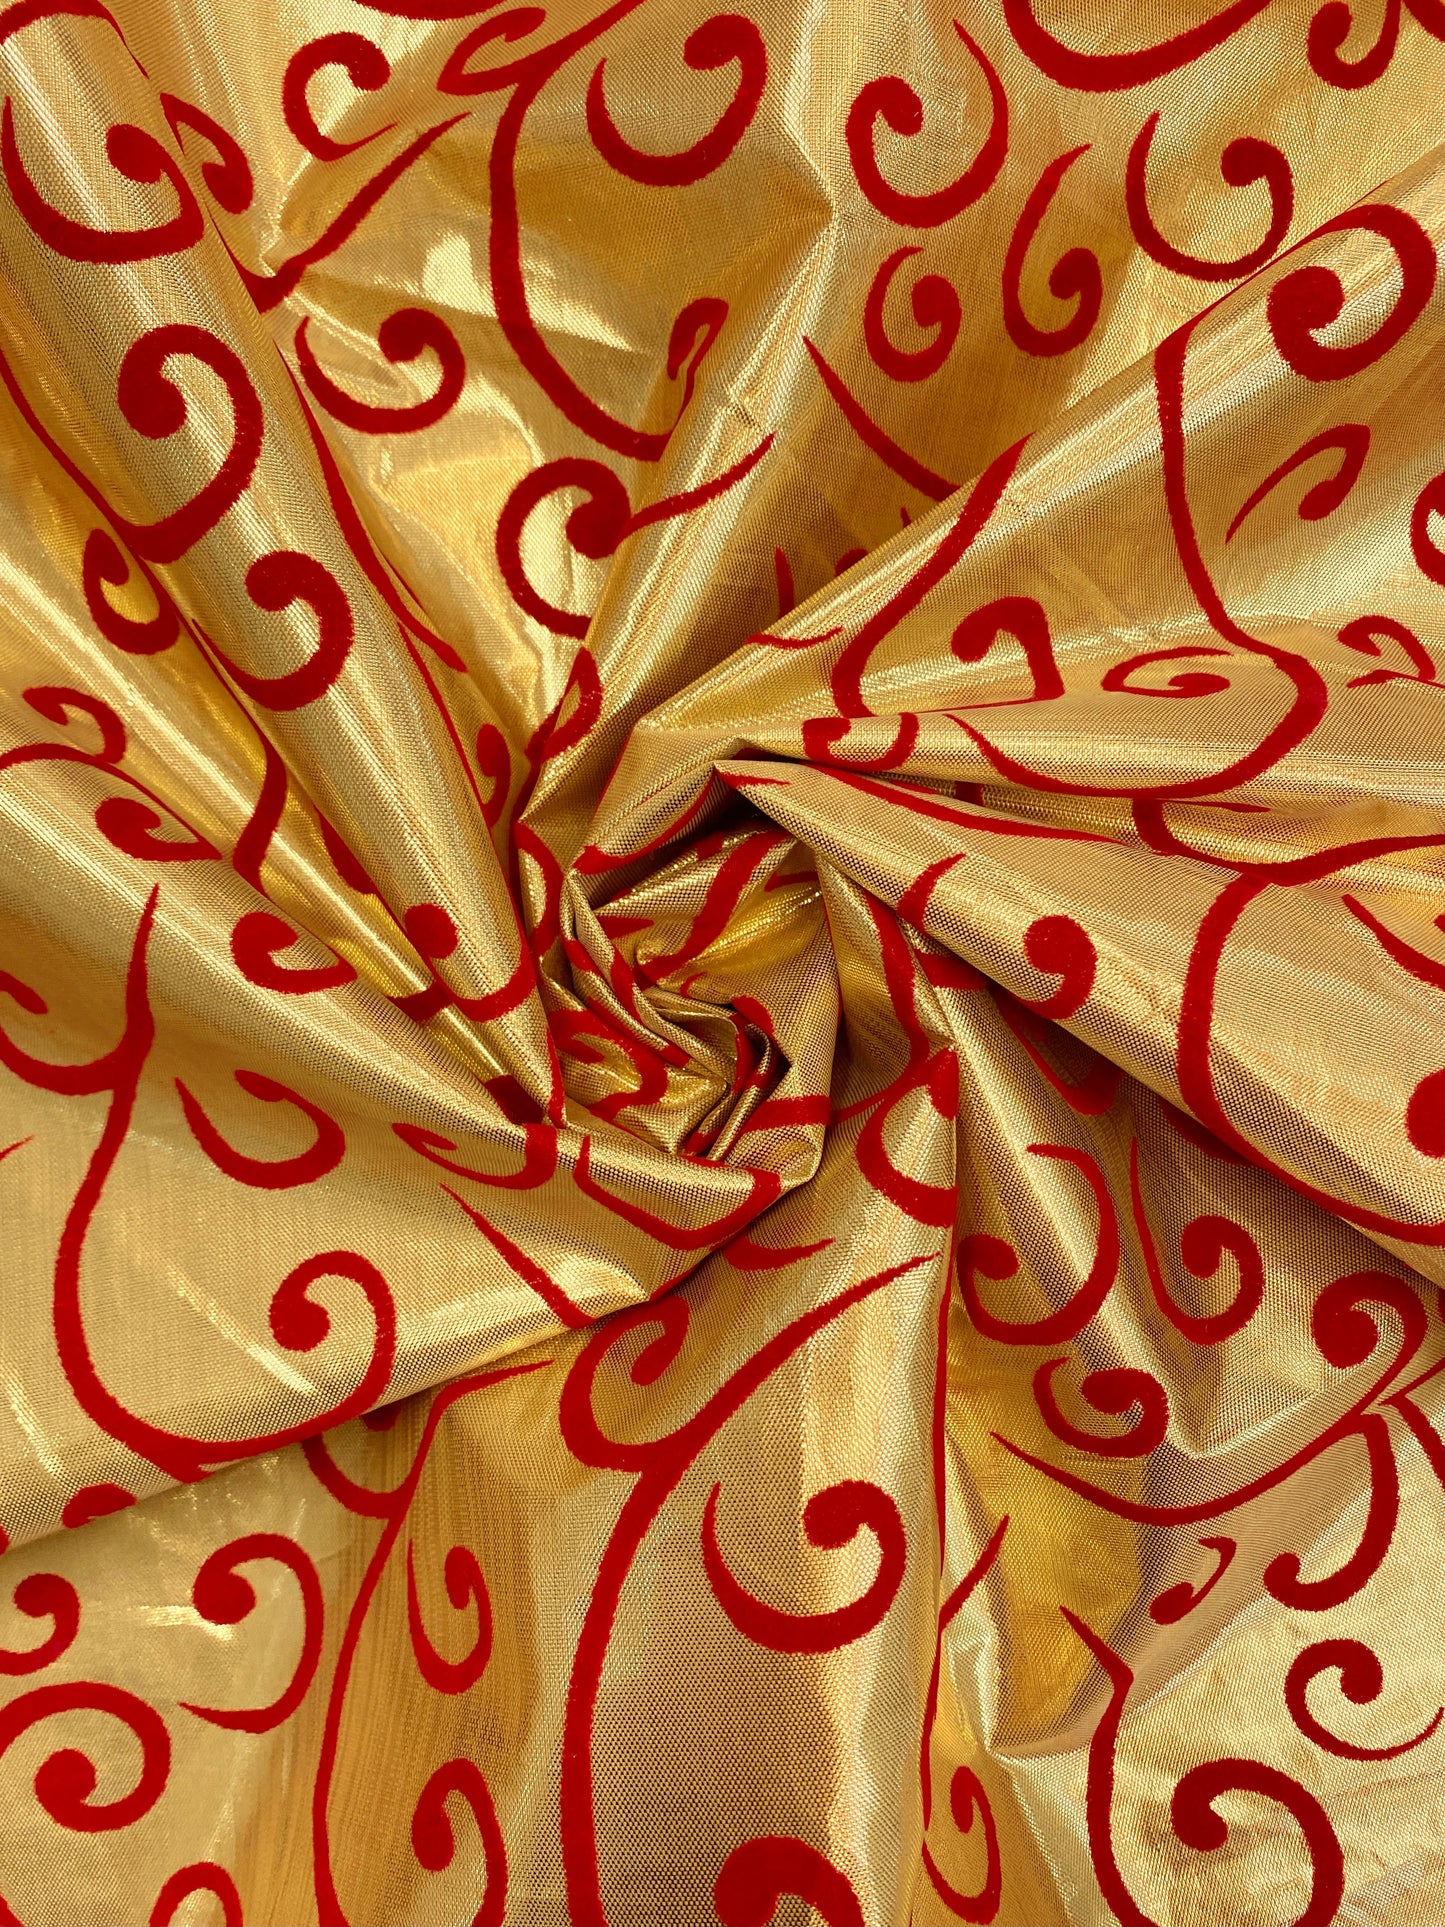 Golden Swirls, polyester